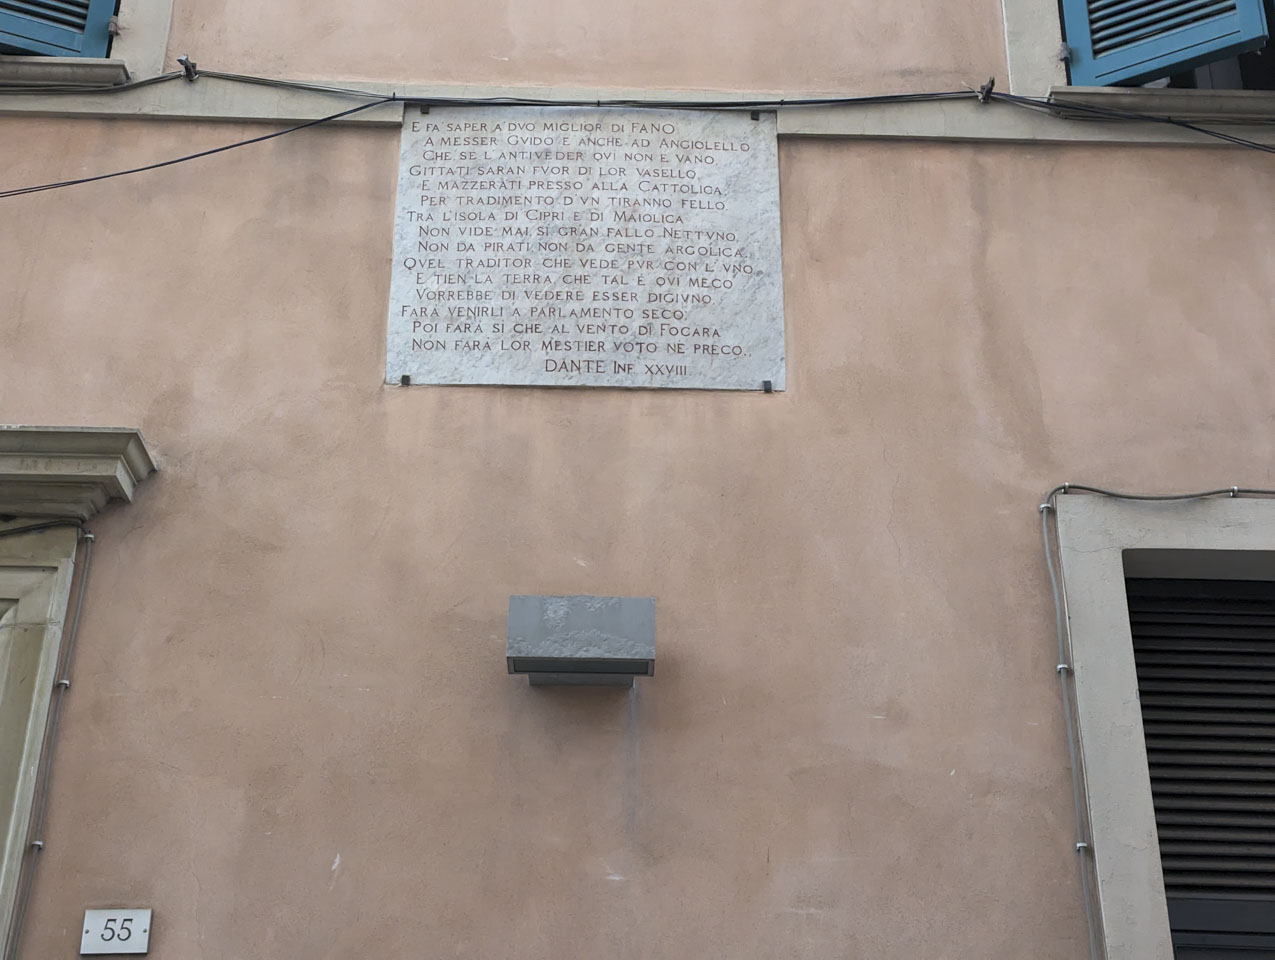 A plaque that quotes Dante